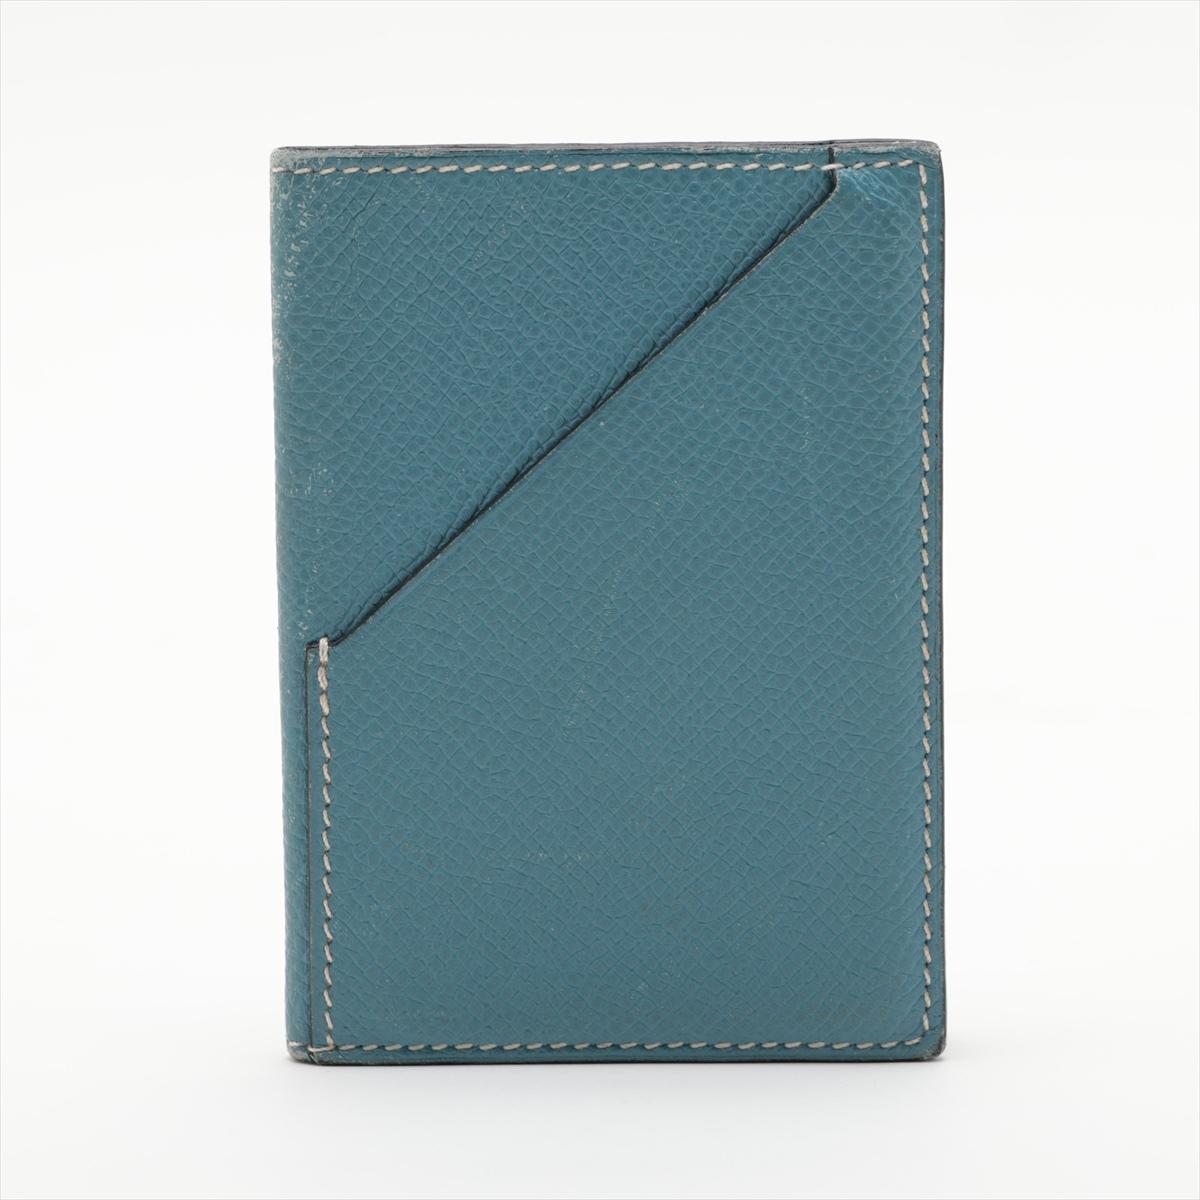 Le porte-cartes Veau Epsom Hermès en bleu est un accessoire luxueux et pratique conçu pour l'individu moderne. Fabriqué en cuir Veau Eleg de haute qualité, connu pour sa texture à grain fin et sa durabilité, l'étui à cartes respire l'élégance